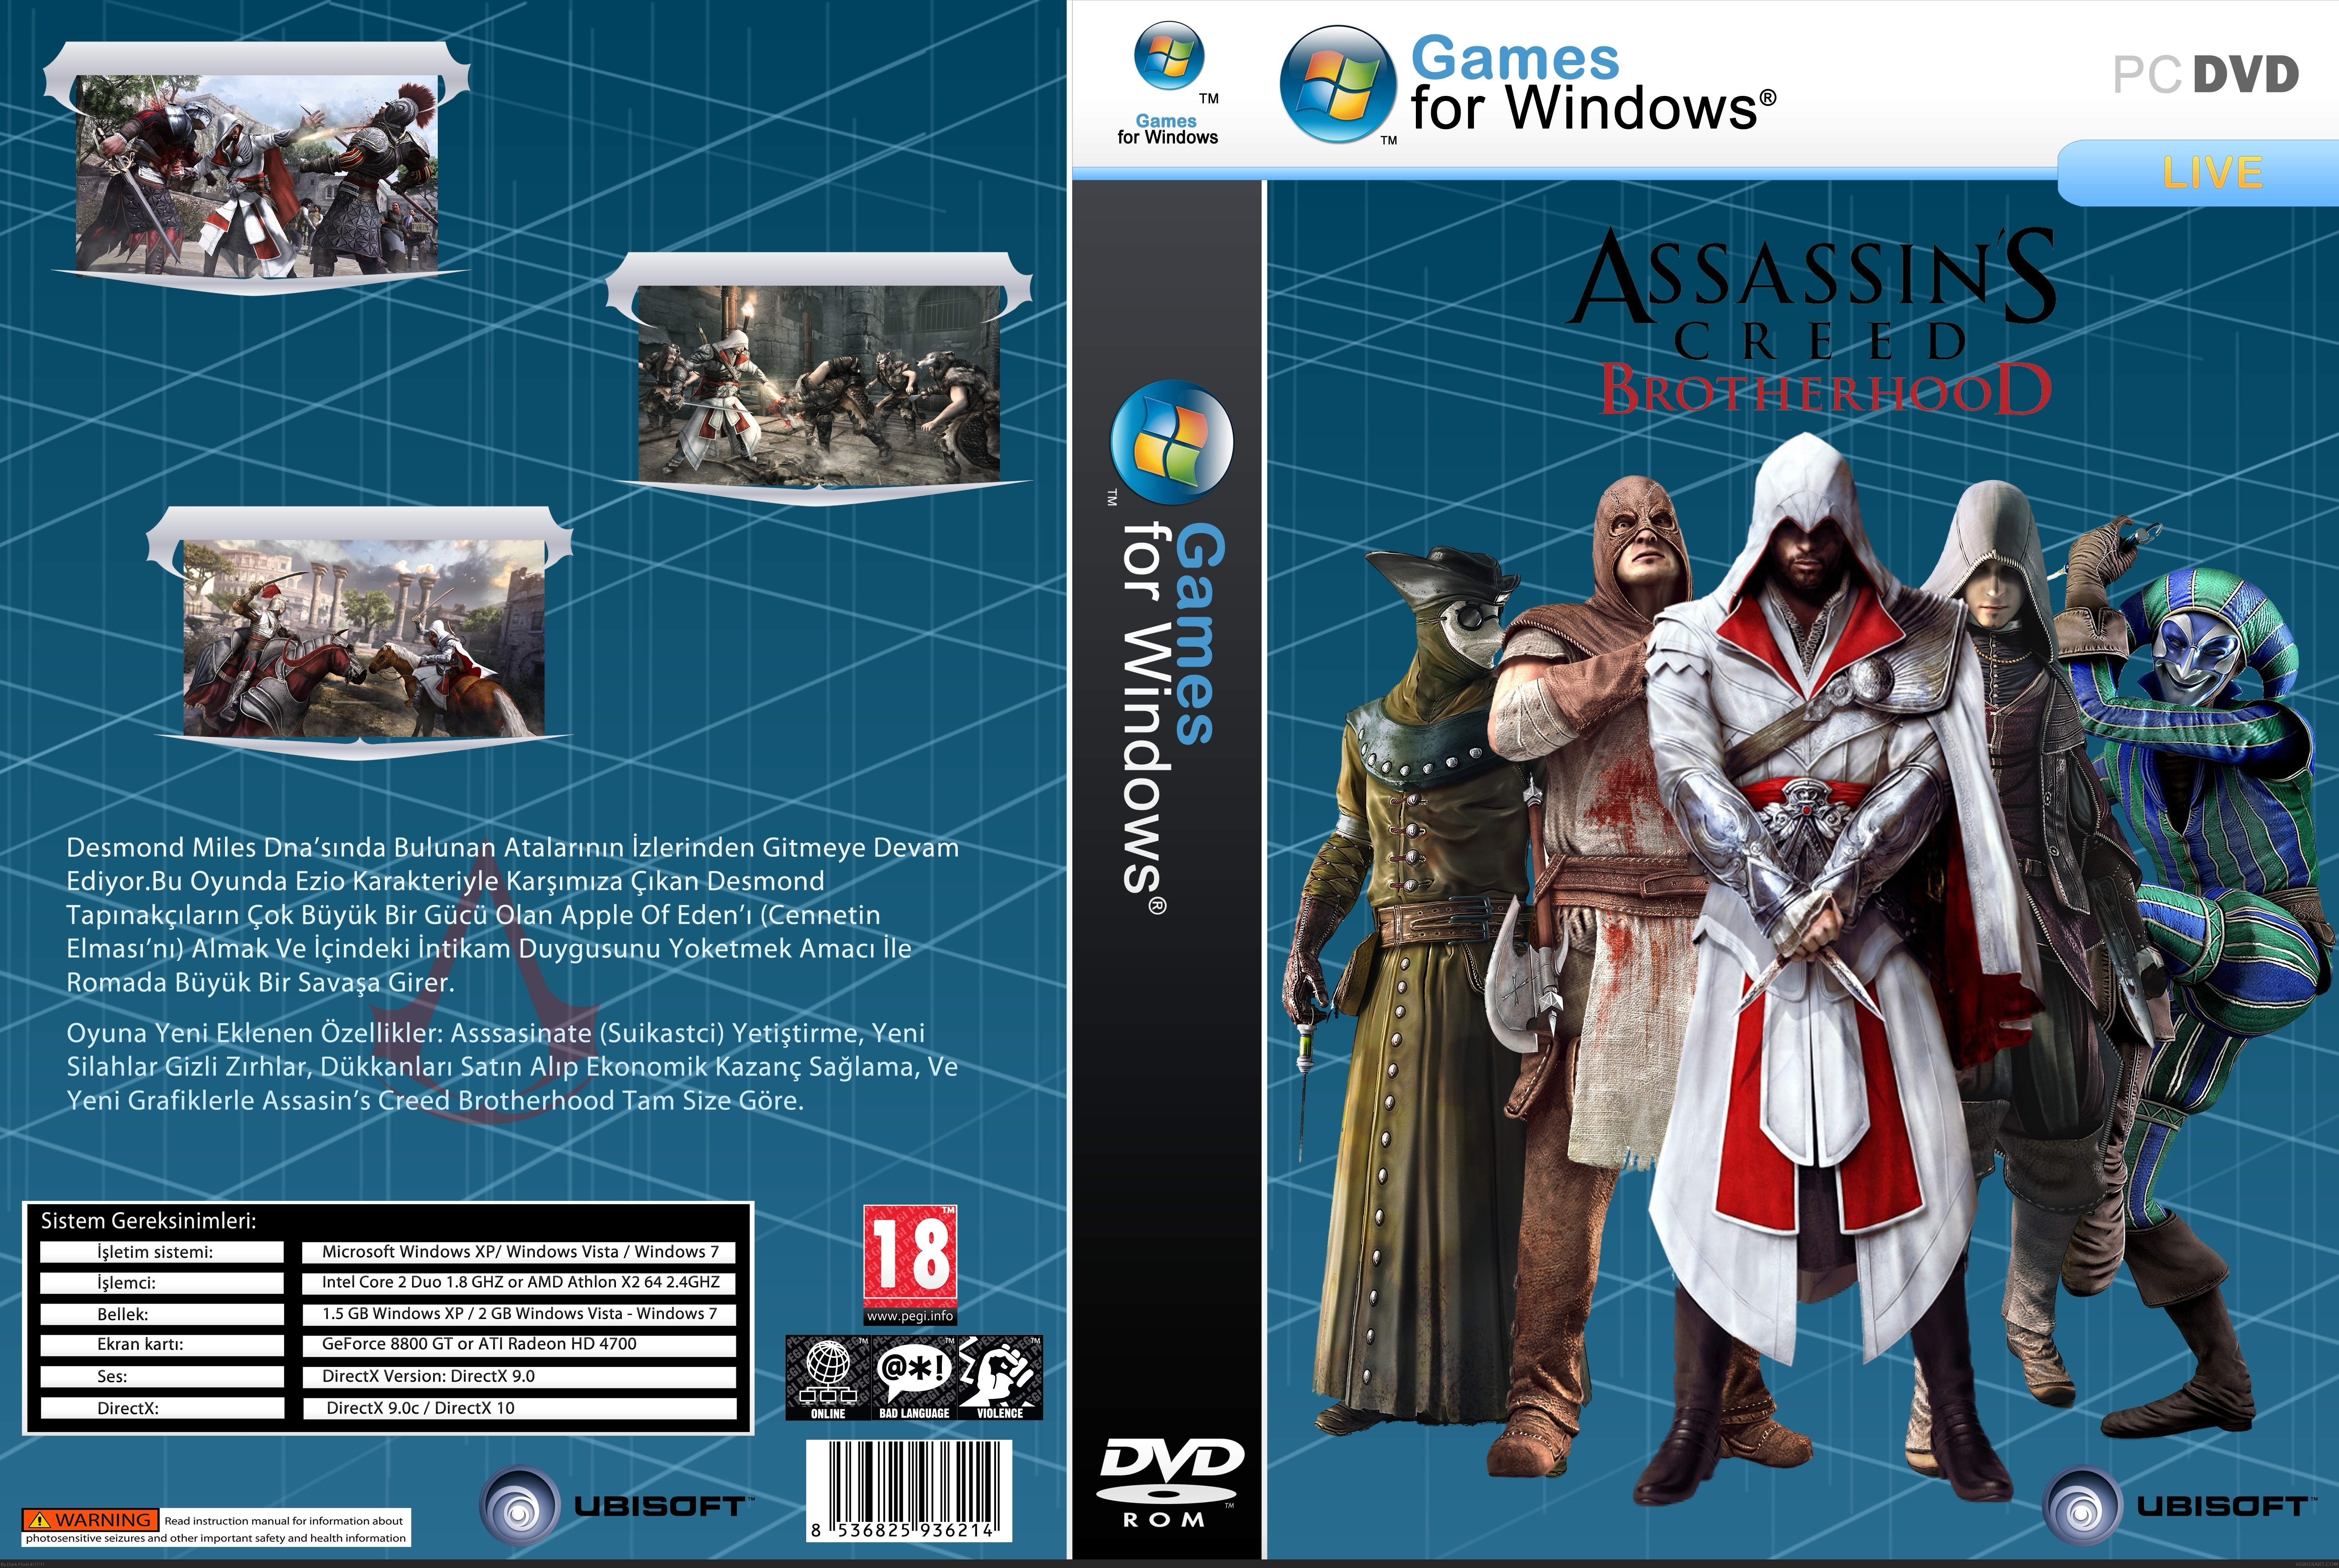 Brotherhood истина creed. Ассасин Крид бразерхуд обложка. Assassins Creed Brotherhood коды. Assassin's Creed Brotherhood читы. Assassin’s Creed: Brotherhood системные.